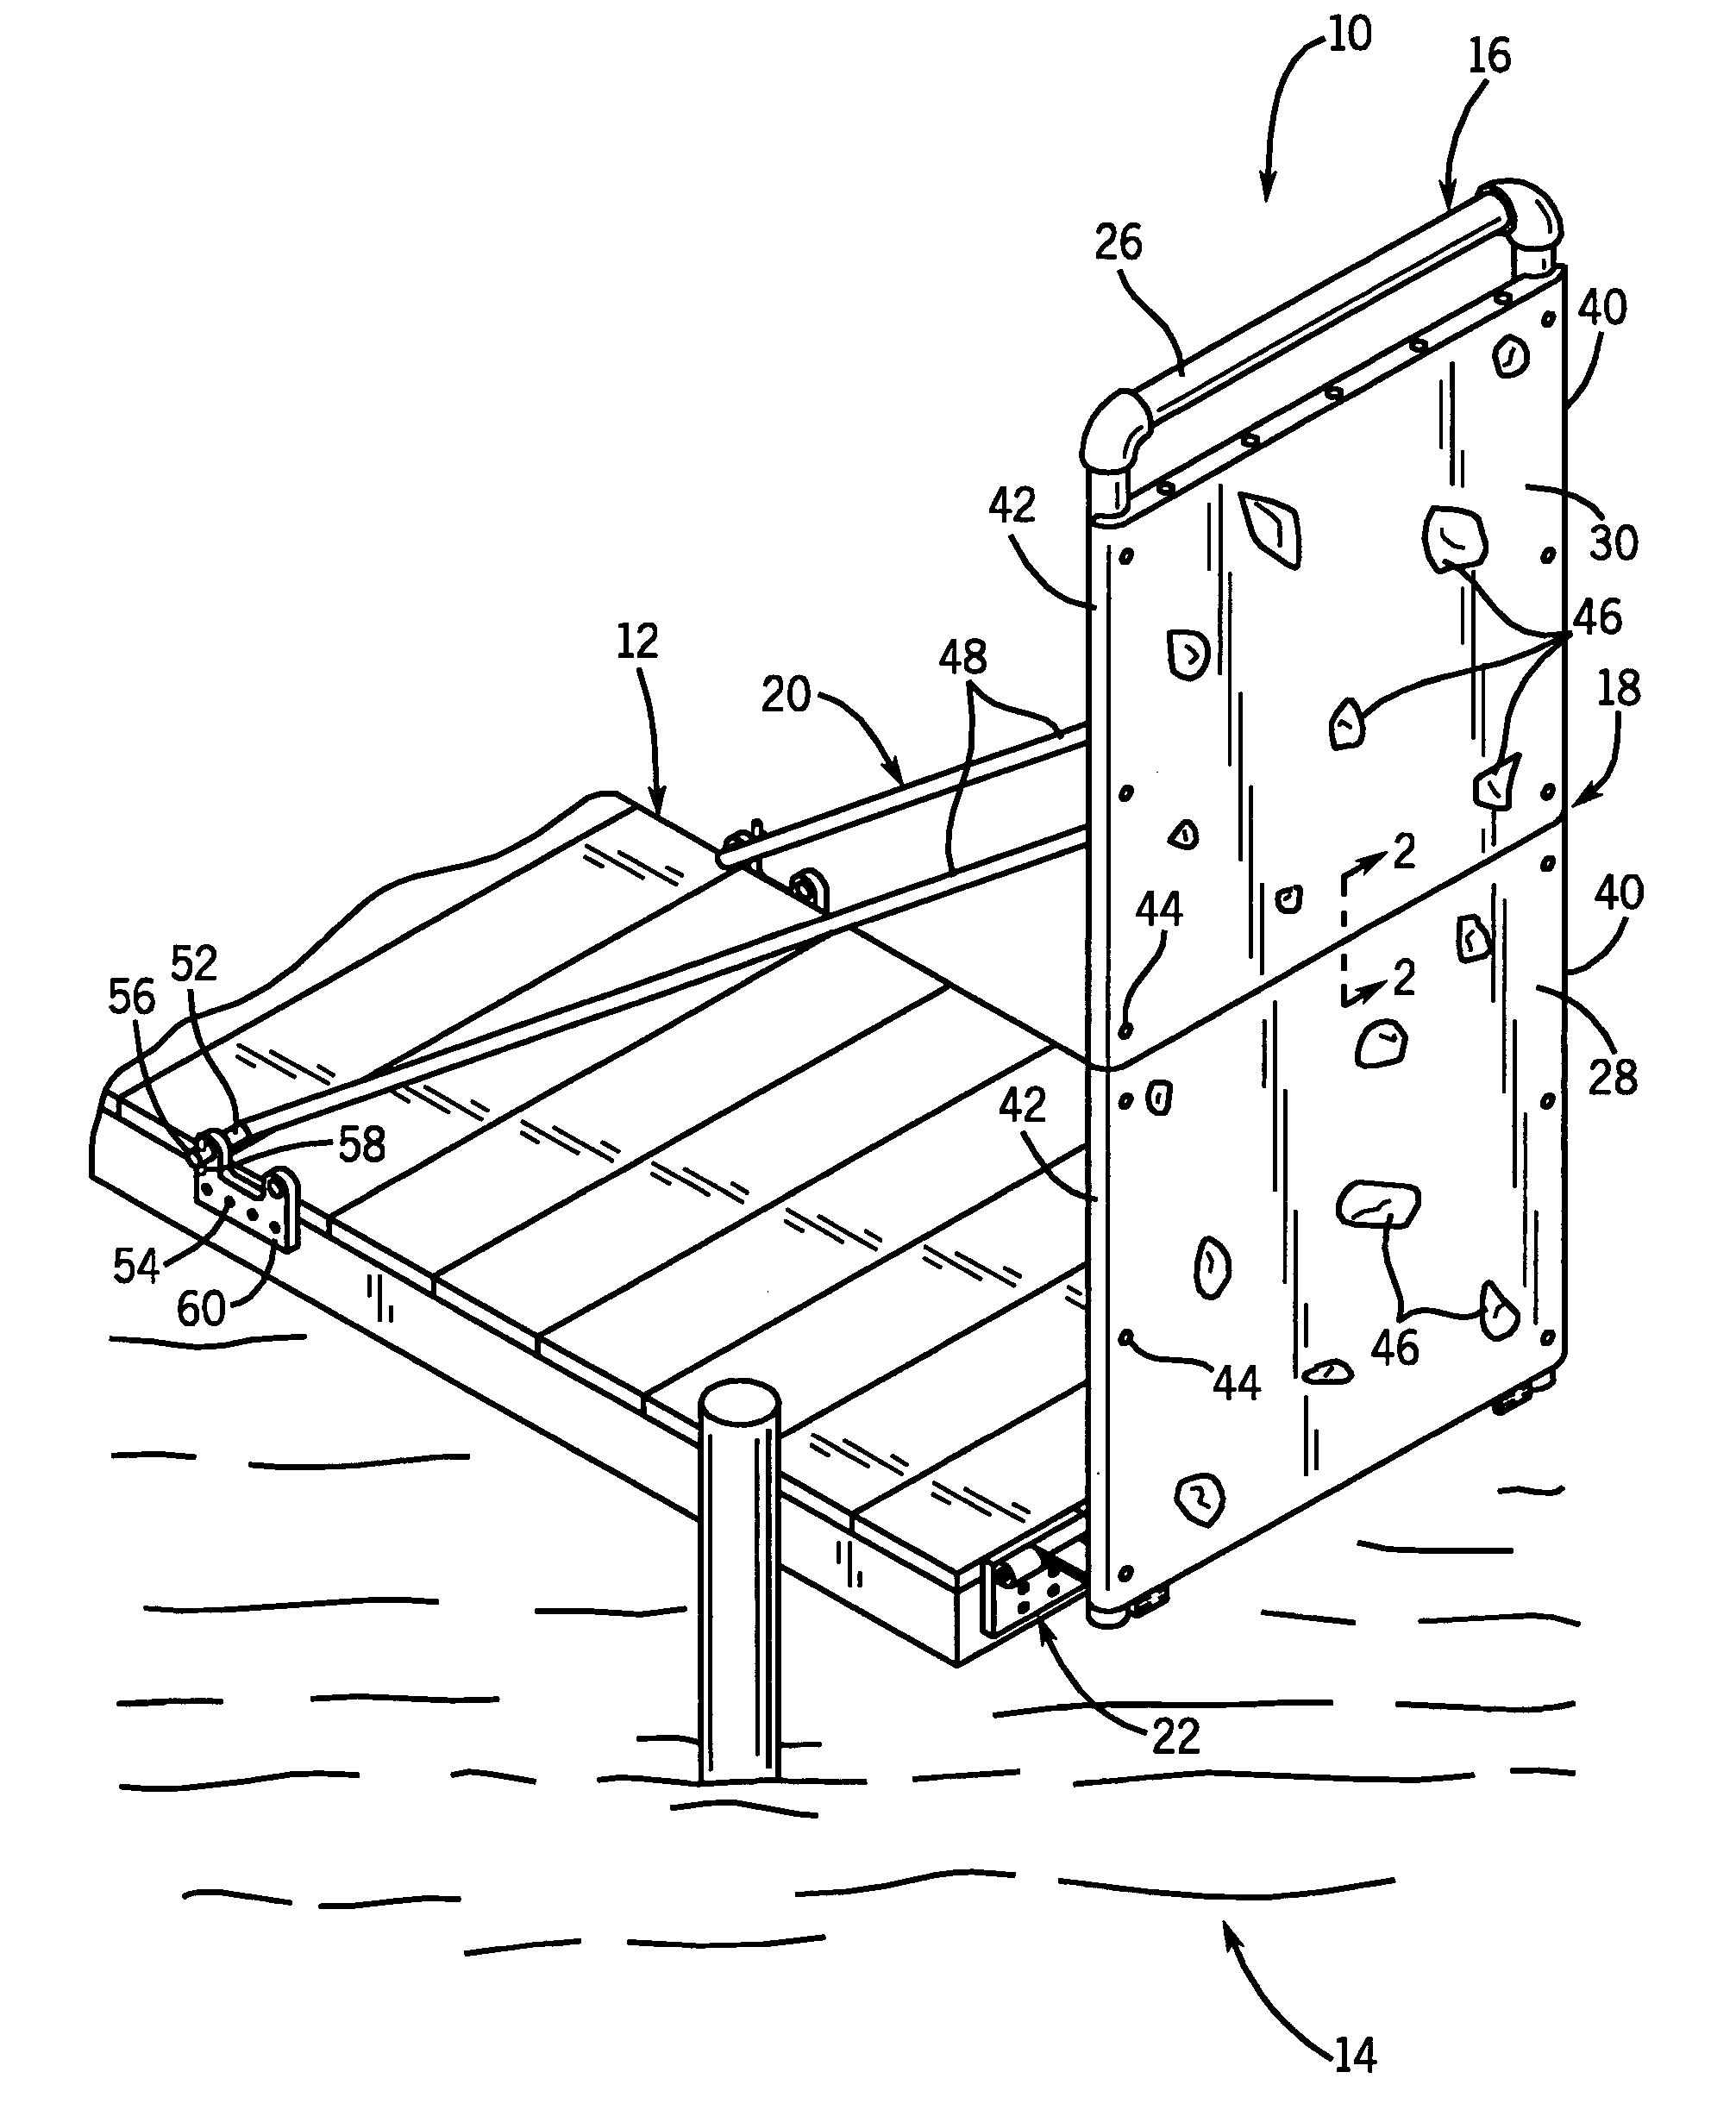 Artificial rock climbing arrangement adapted for water environment